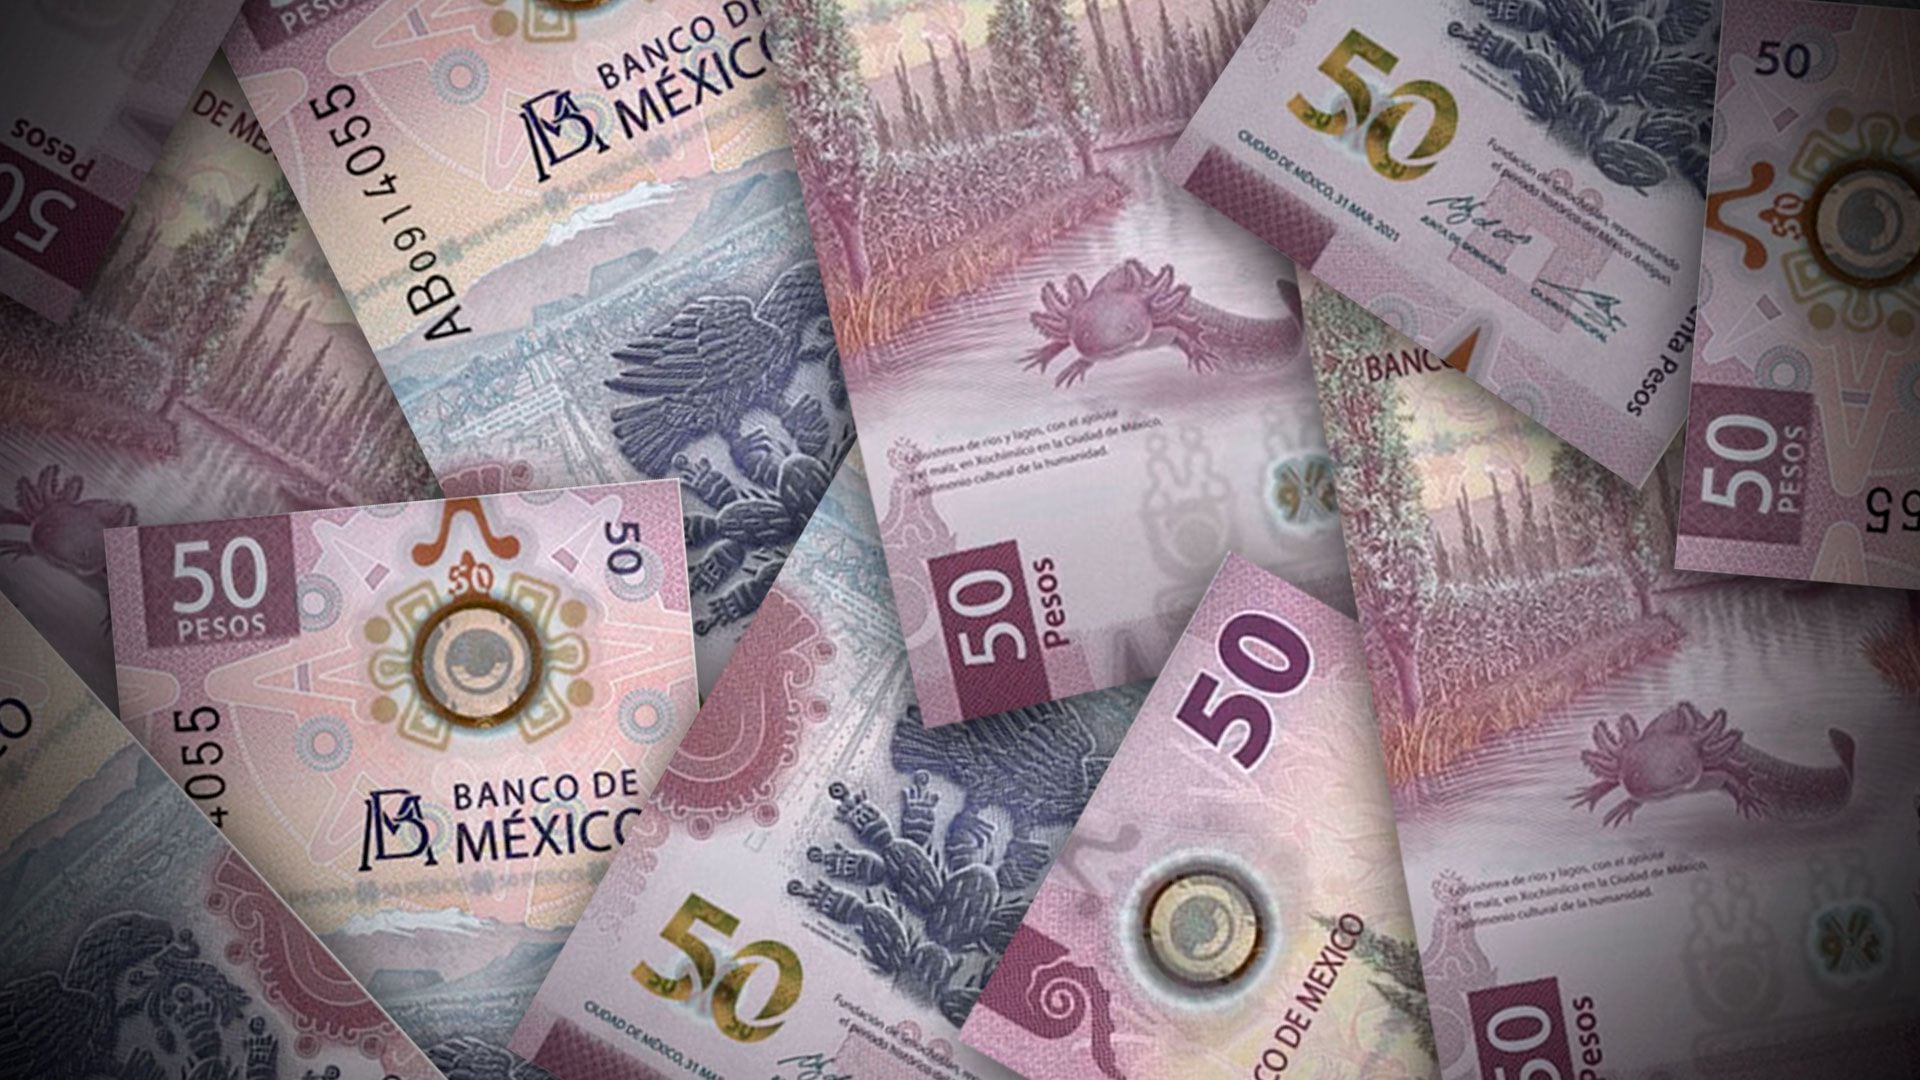 La producción de billetes falsos crece, mientras aumenta el 'chulco' –  Diario La Hora